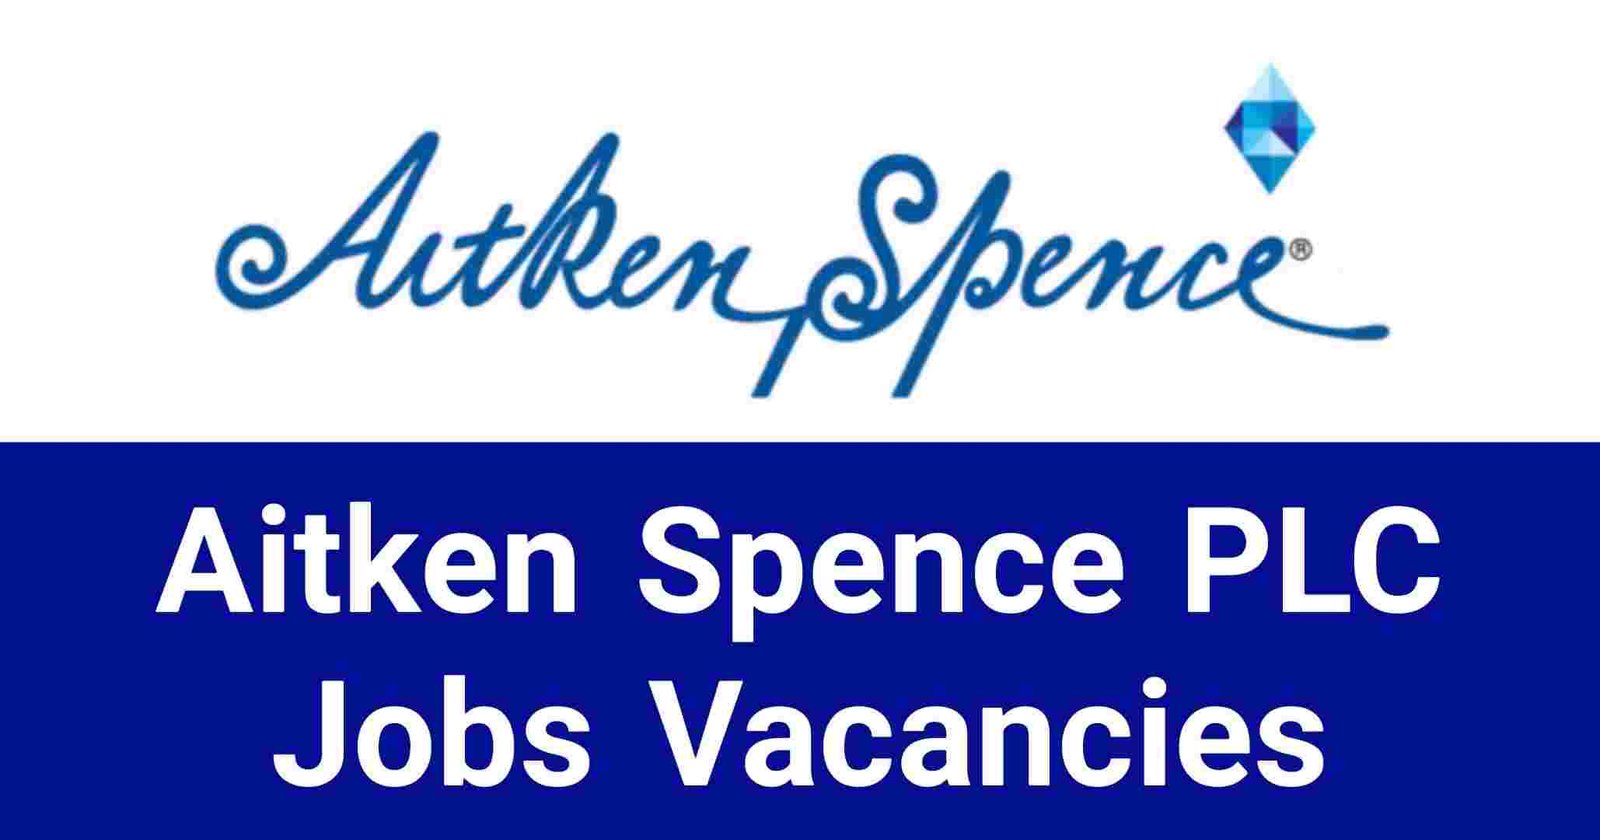 Aitken Spence PLC Jobs Vacancies